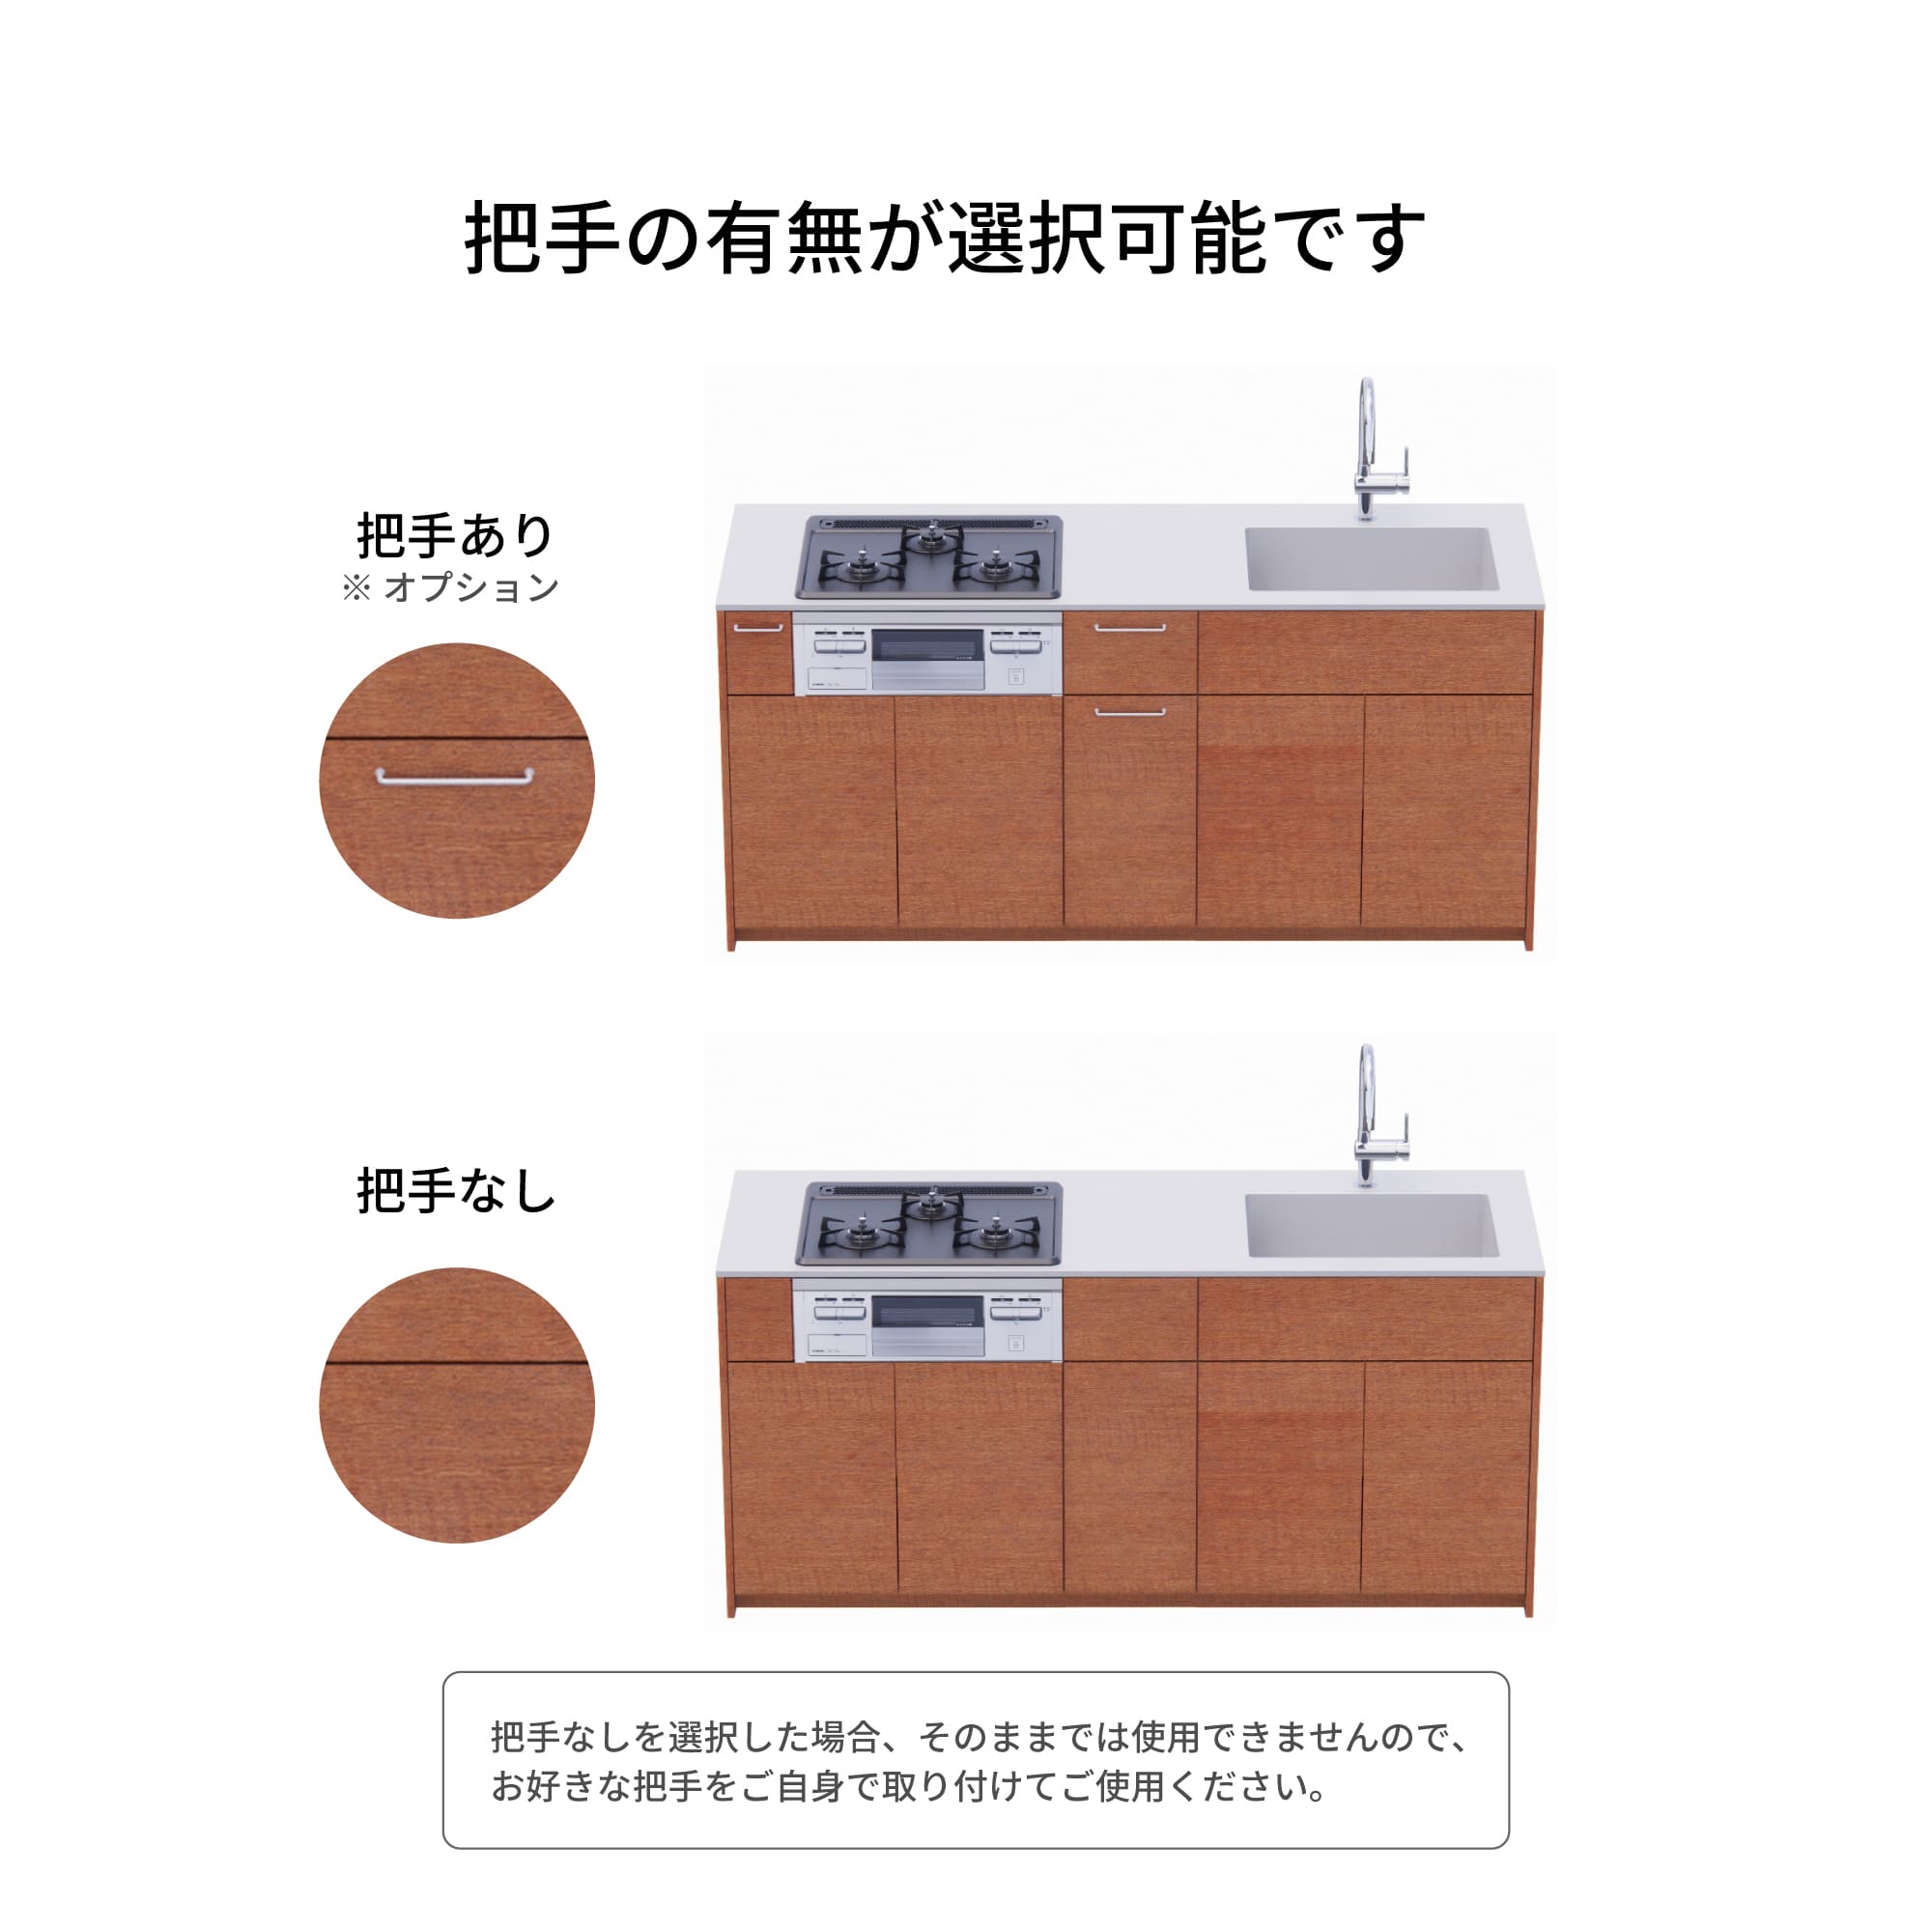 木製システムキッチン 対面型 W1840・コンロあり / オーブンなし / 食洗機なし KB-KC022-29-G183 把手の有無が選択可能です